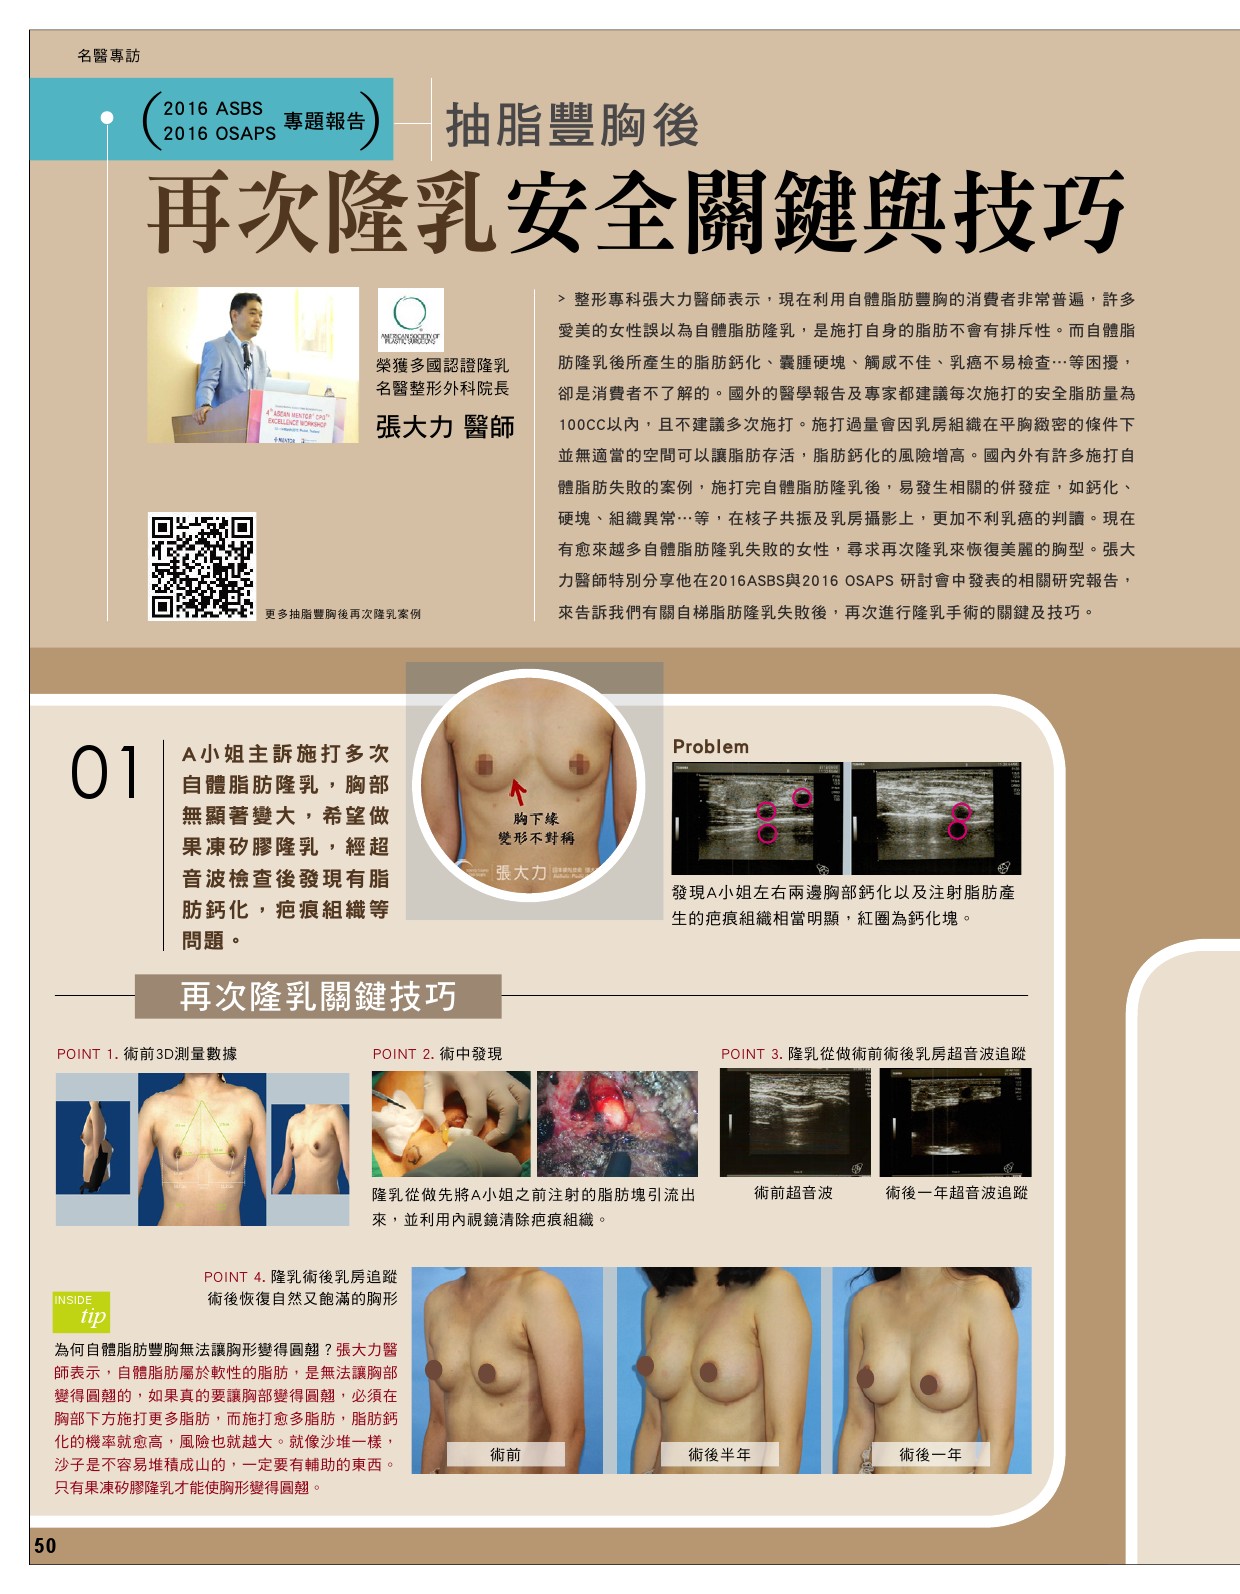 抽脂豐胸後 再次隆乳安全關鍵與技巧-雜誌專訪-張大力-整形名醫-東京風采